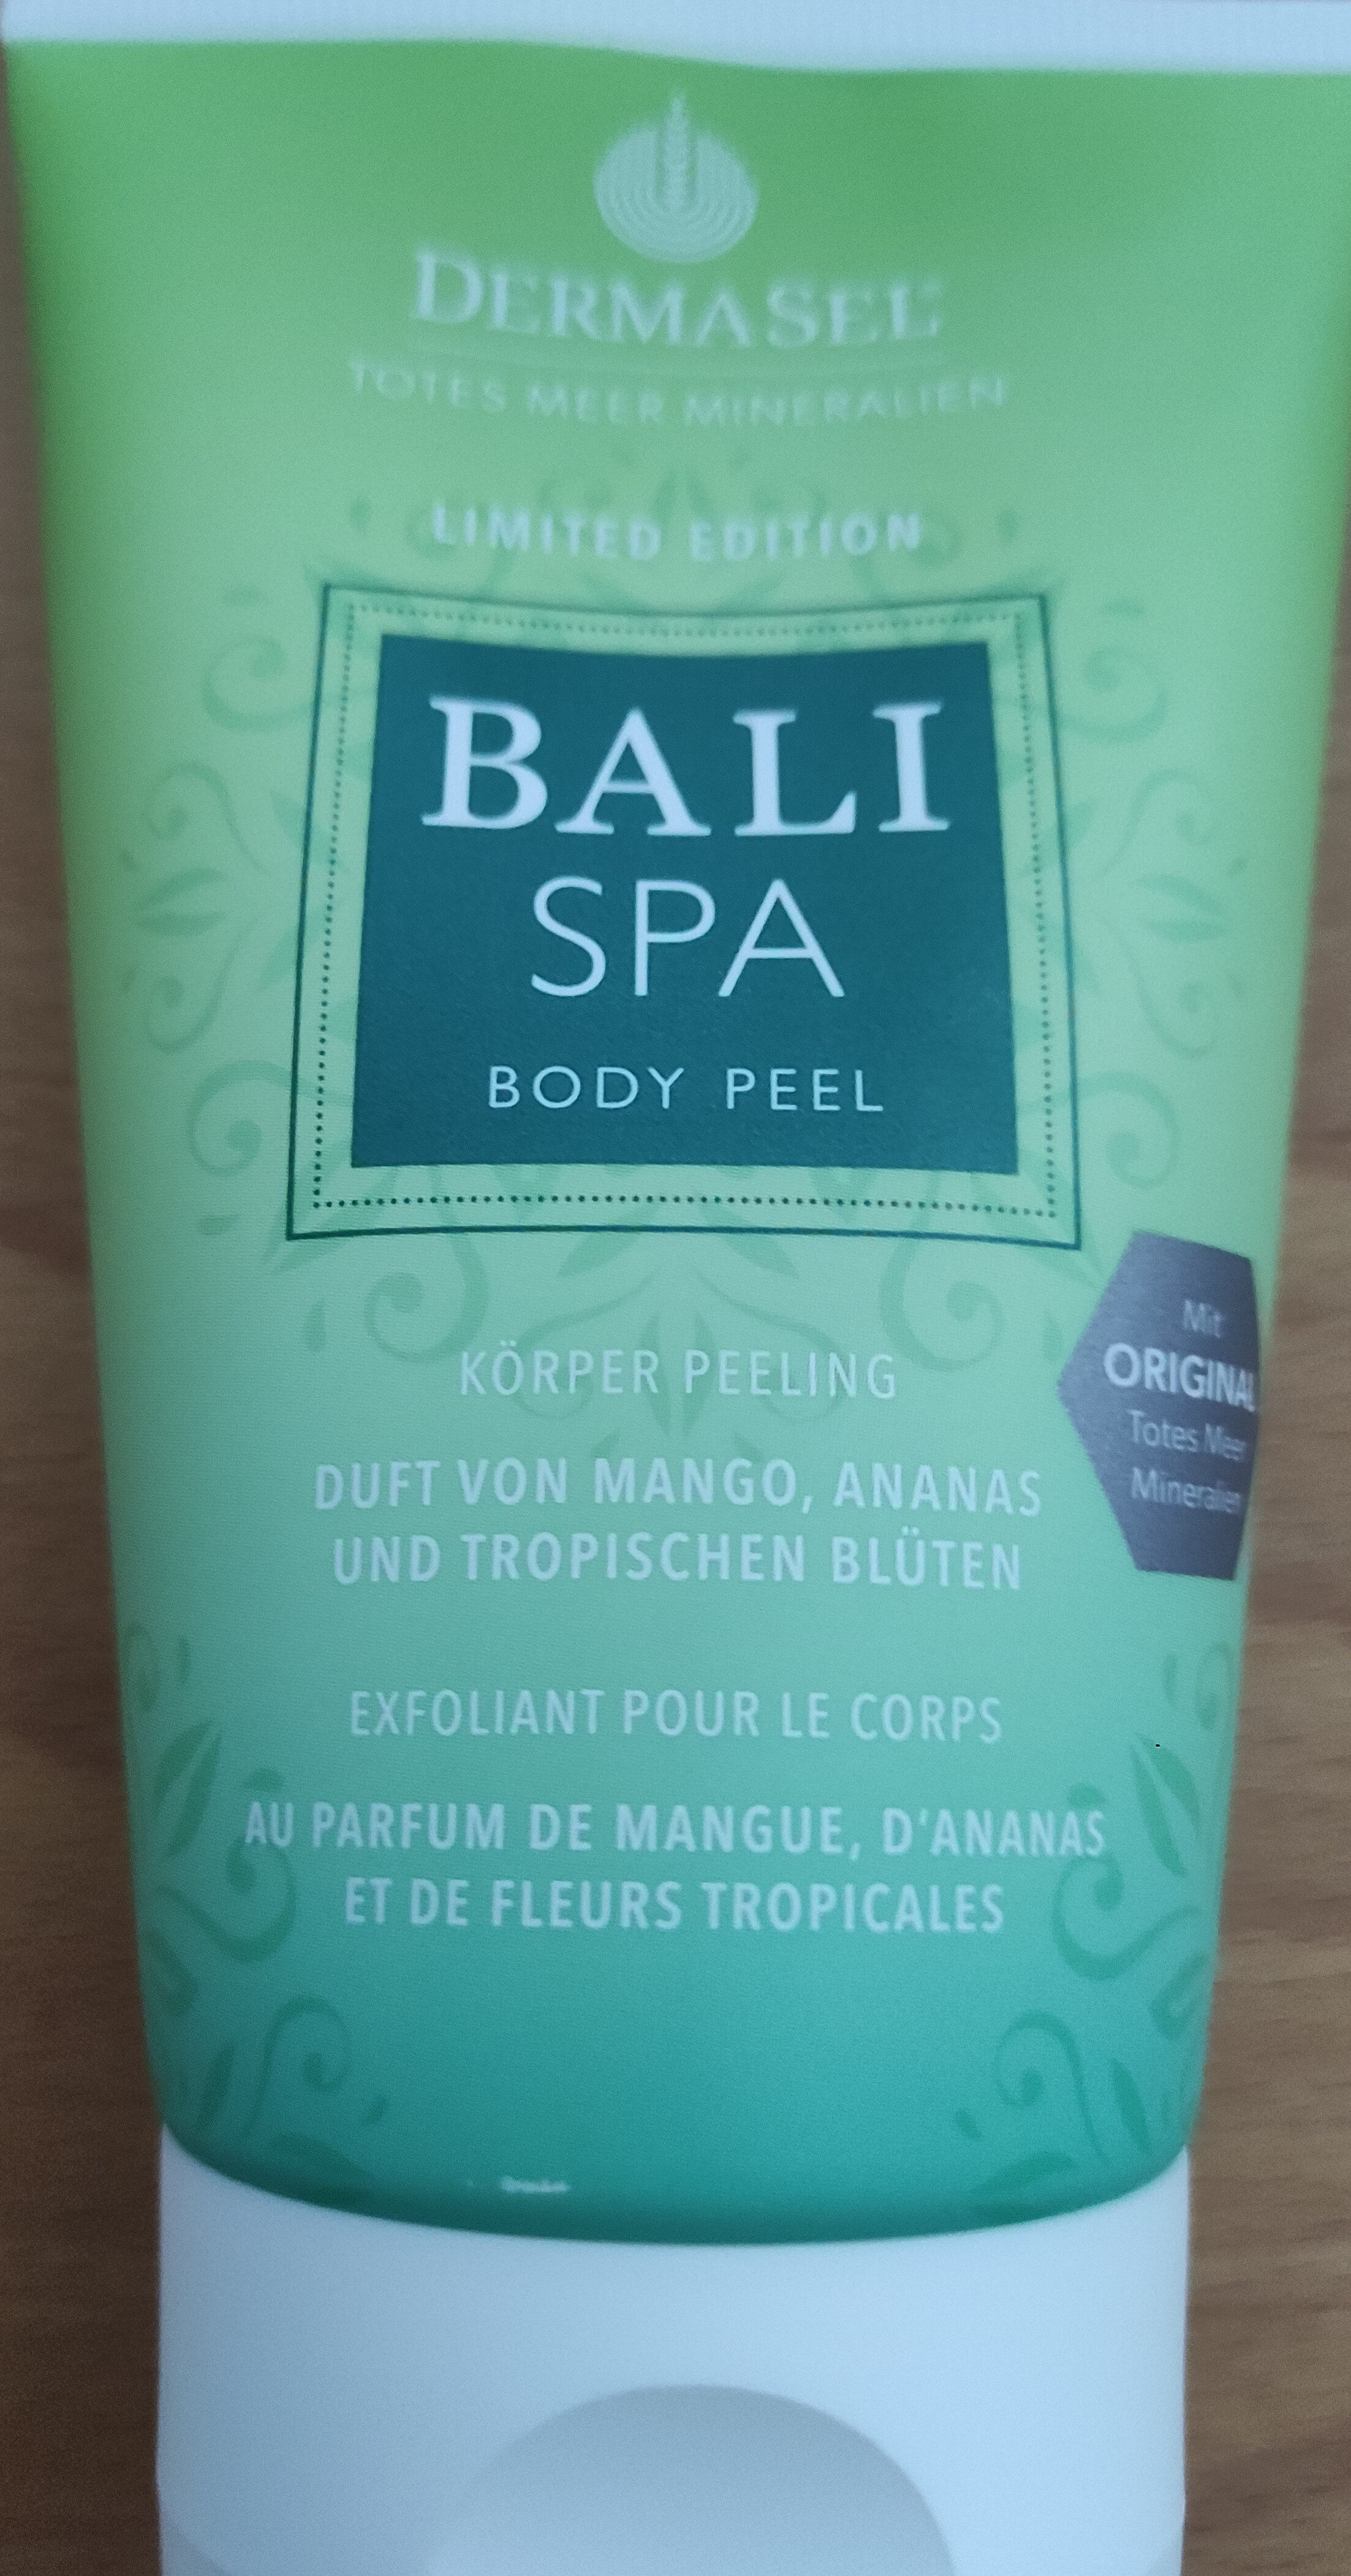 Dermasel Bali Spa Body Peel Körper Peeling - Produkt - de